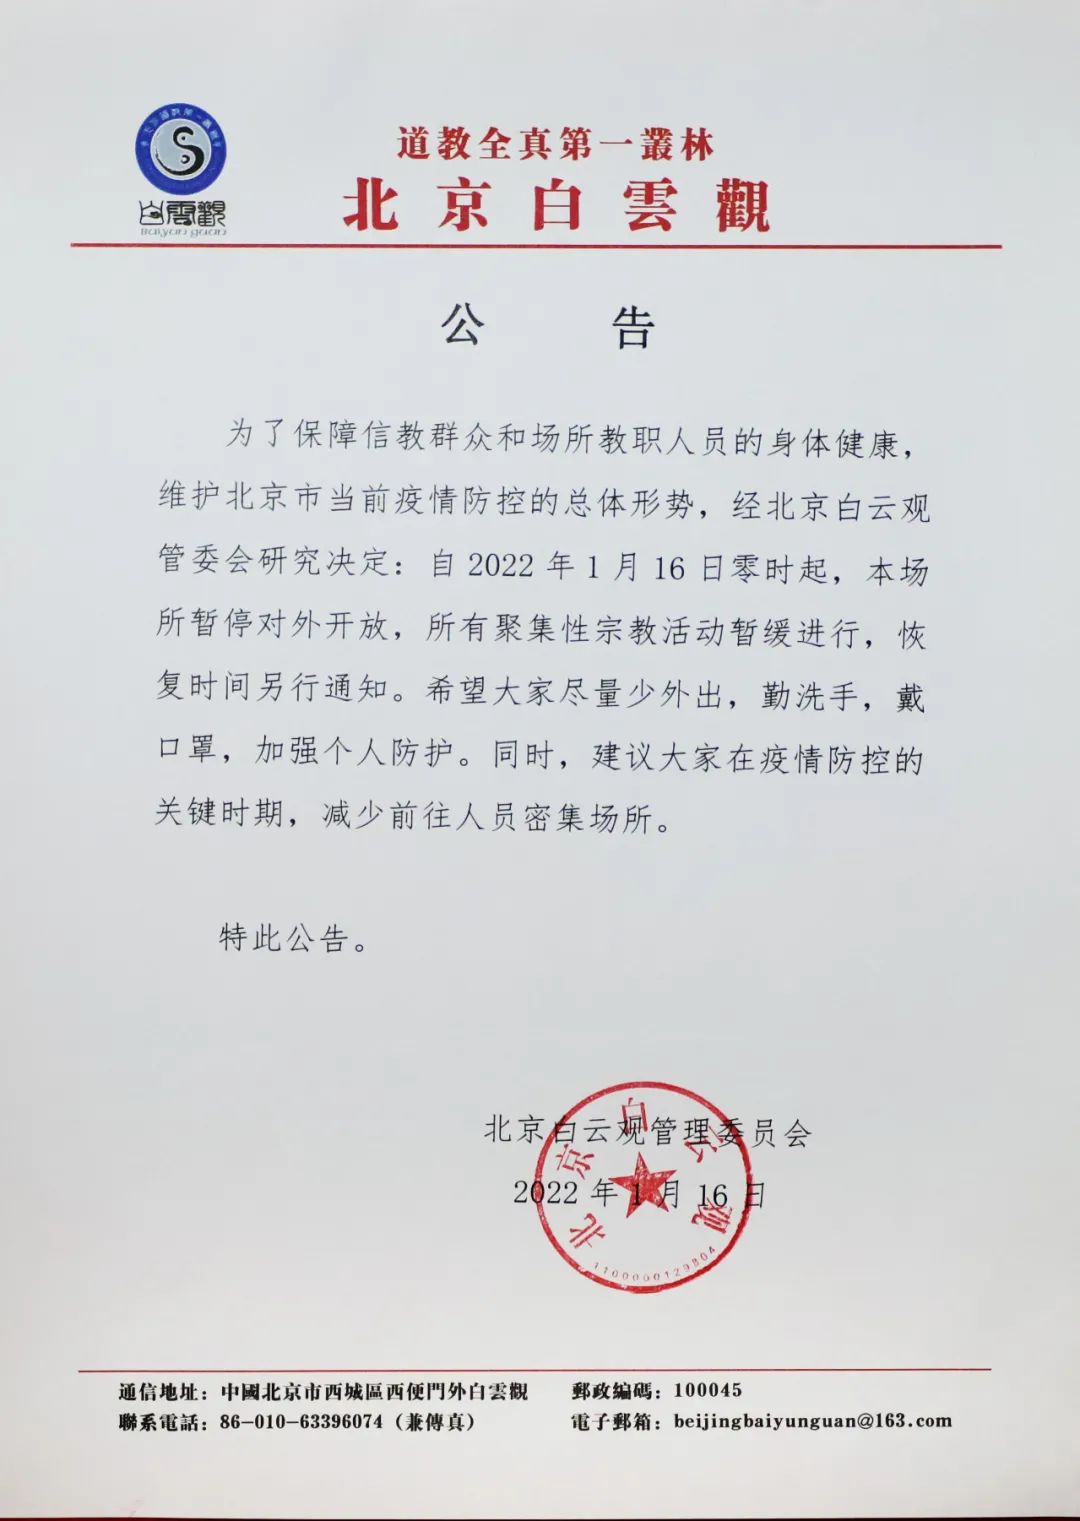 1月16日零时起，北京白云观暂停对外开放